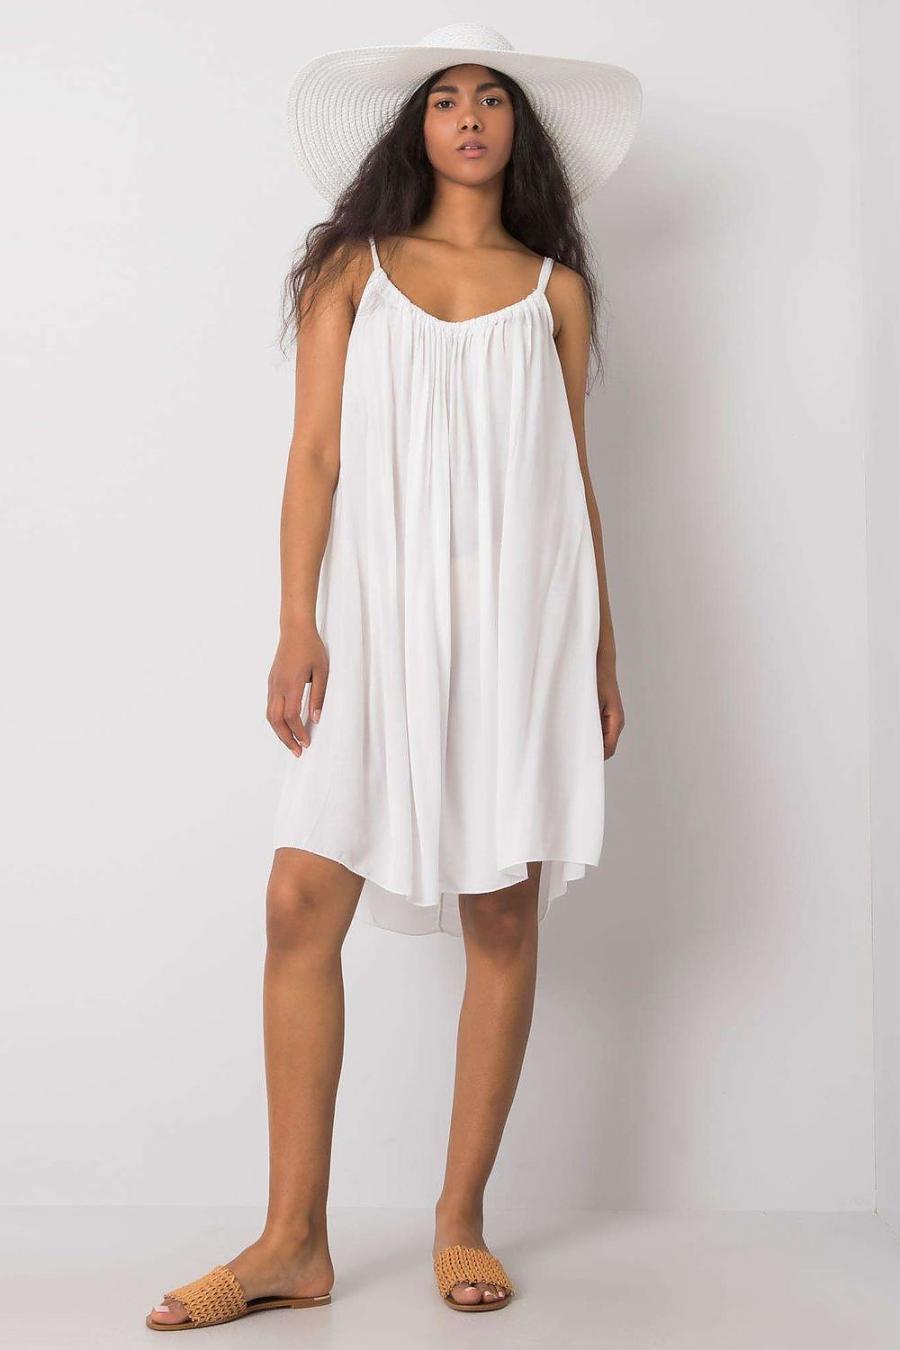 Ostatní značky šaty dámské 165030 - Bílá - velikost M